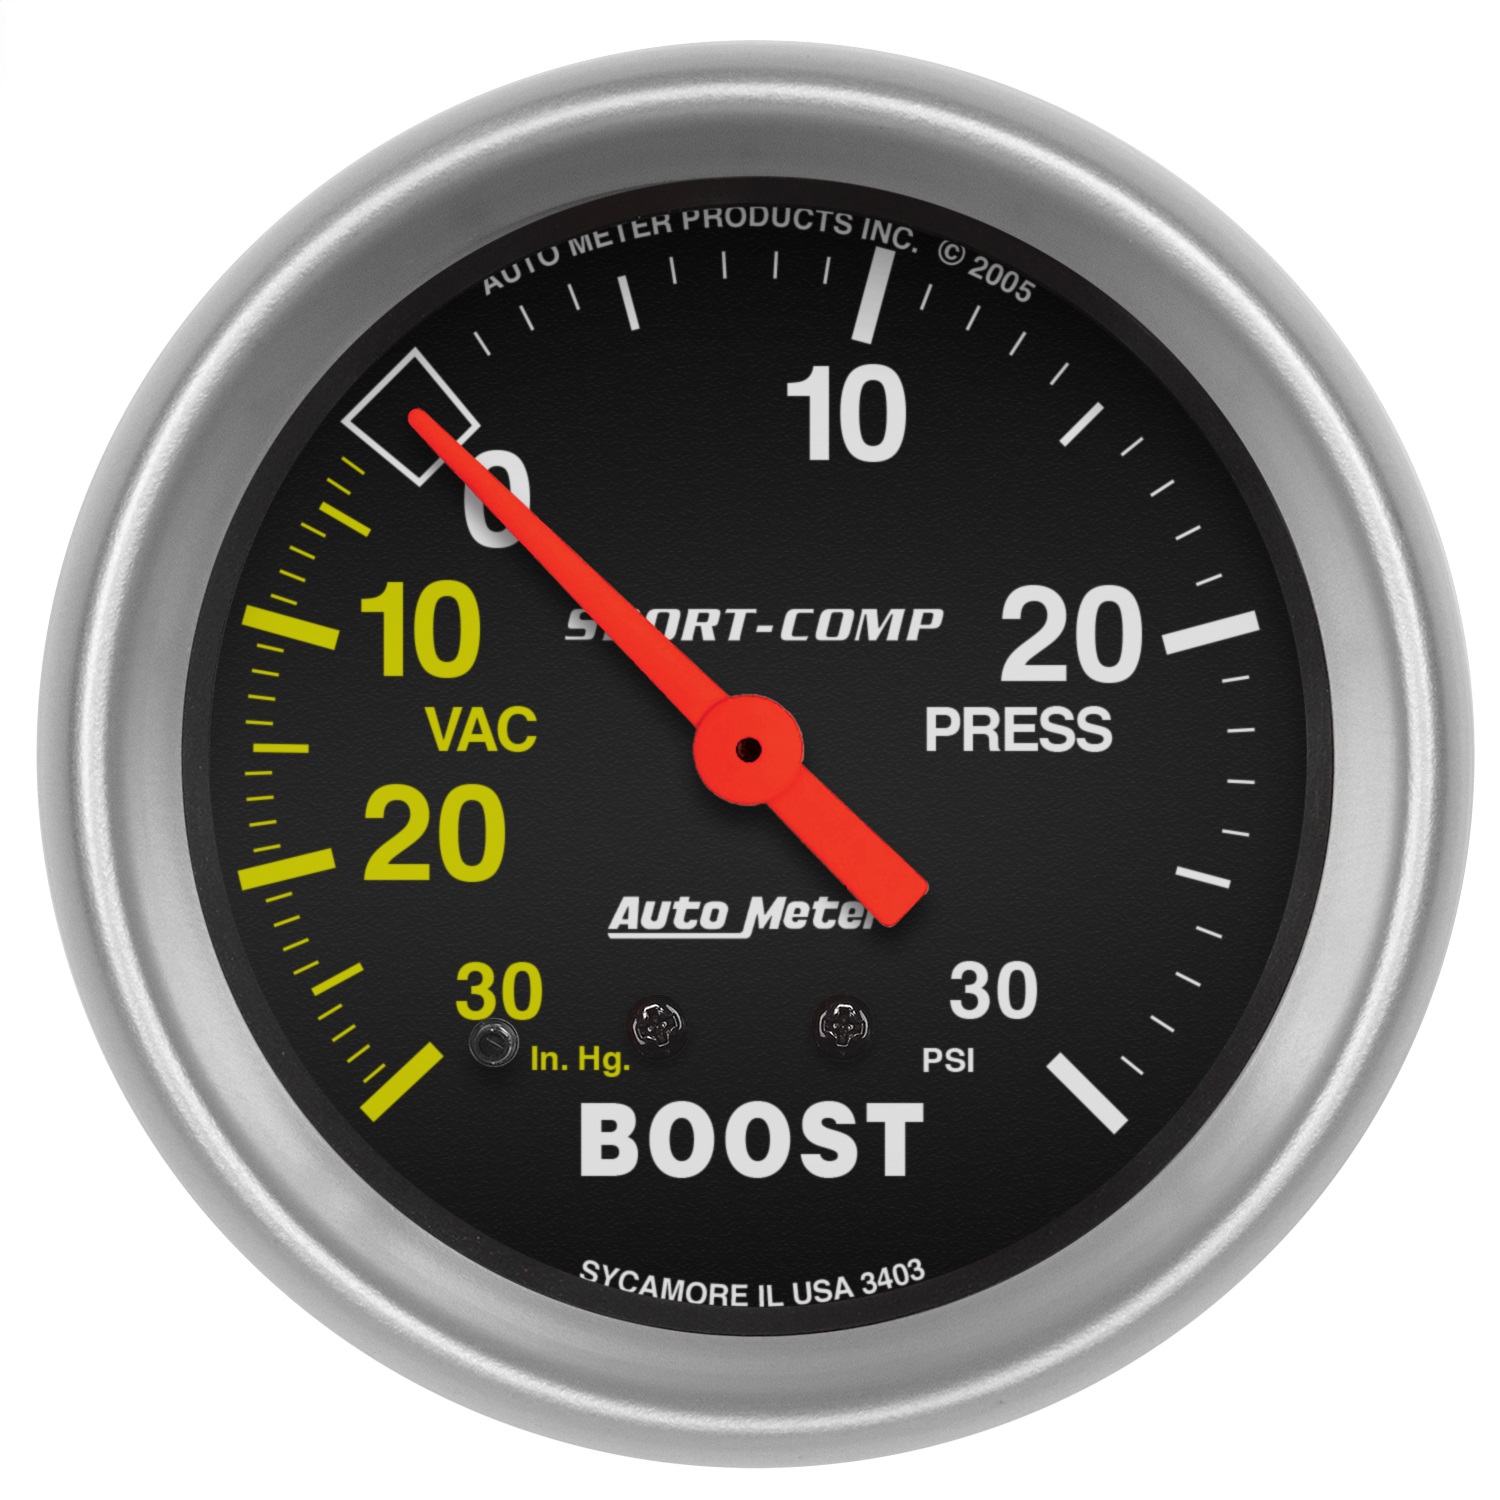 Auto Meter Auto Meter 3403 Sport-Comp; Mechanical Boost/Vacuum Gauge